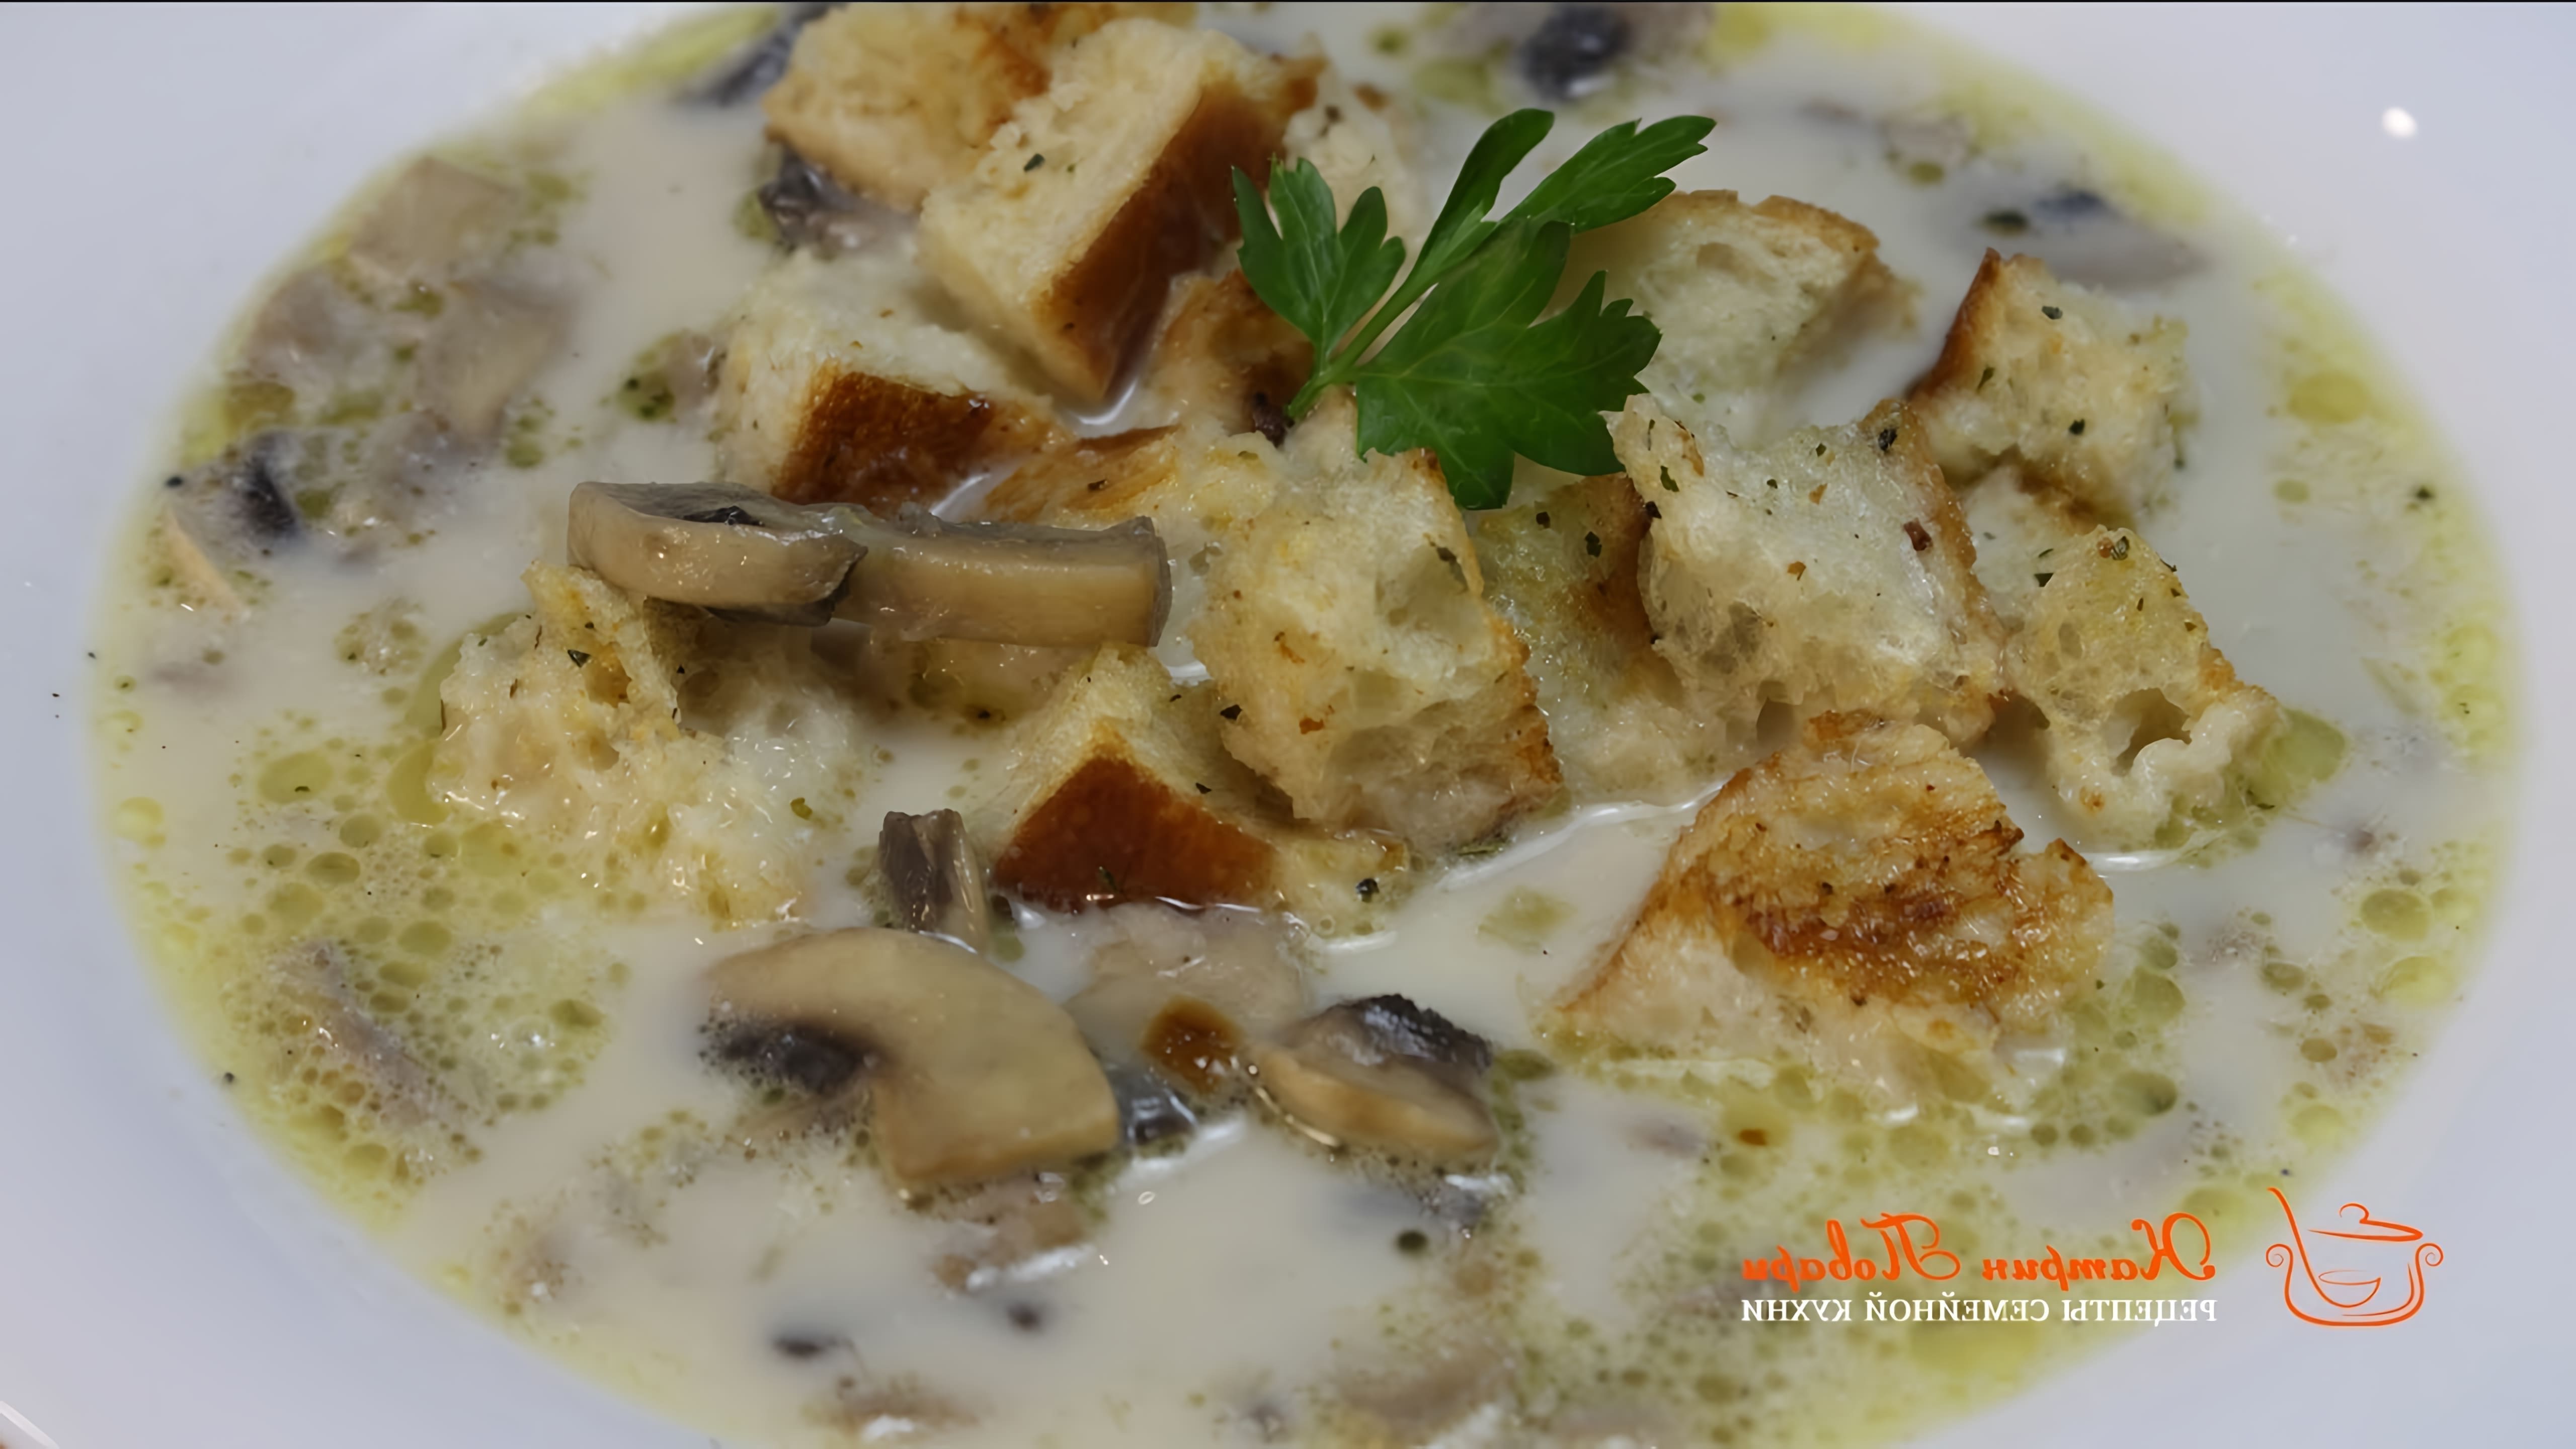 В этом видео демонстрируется рецепт грибного супа со сливками